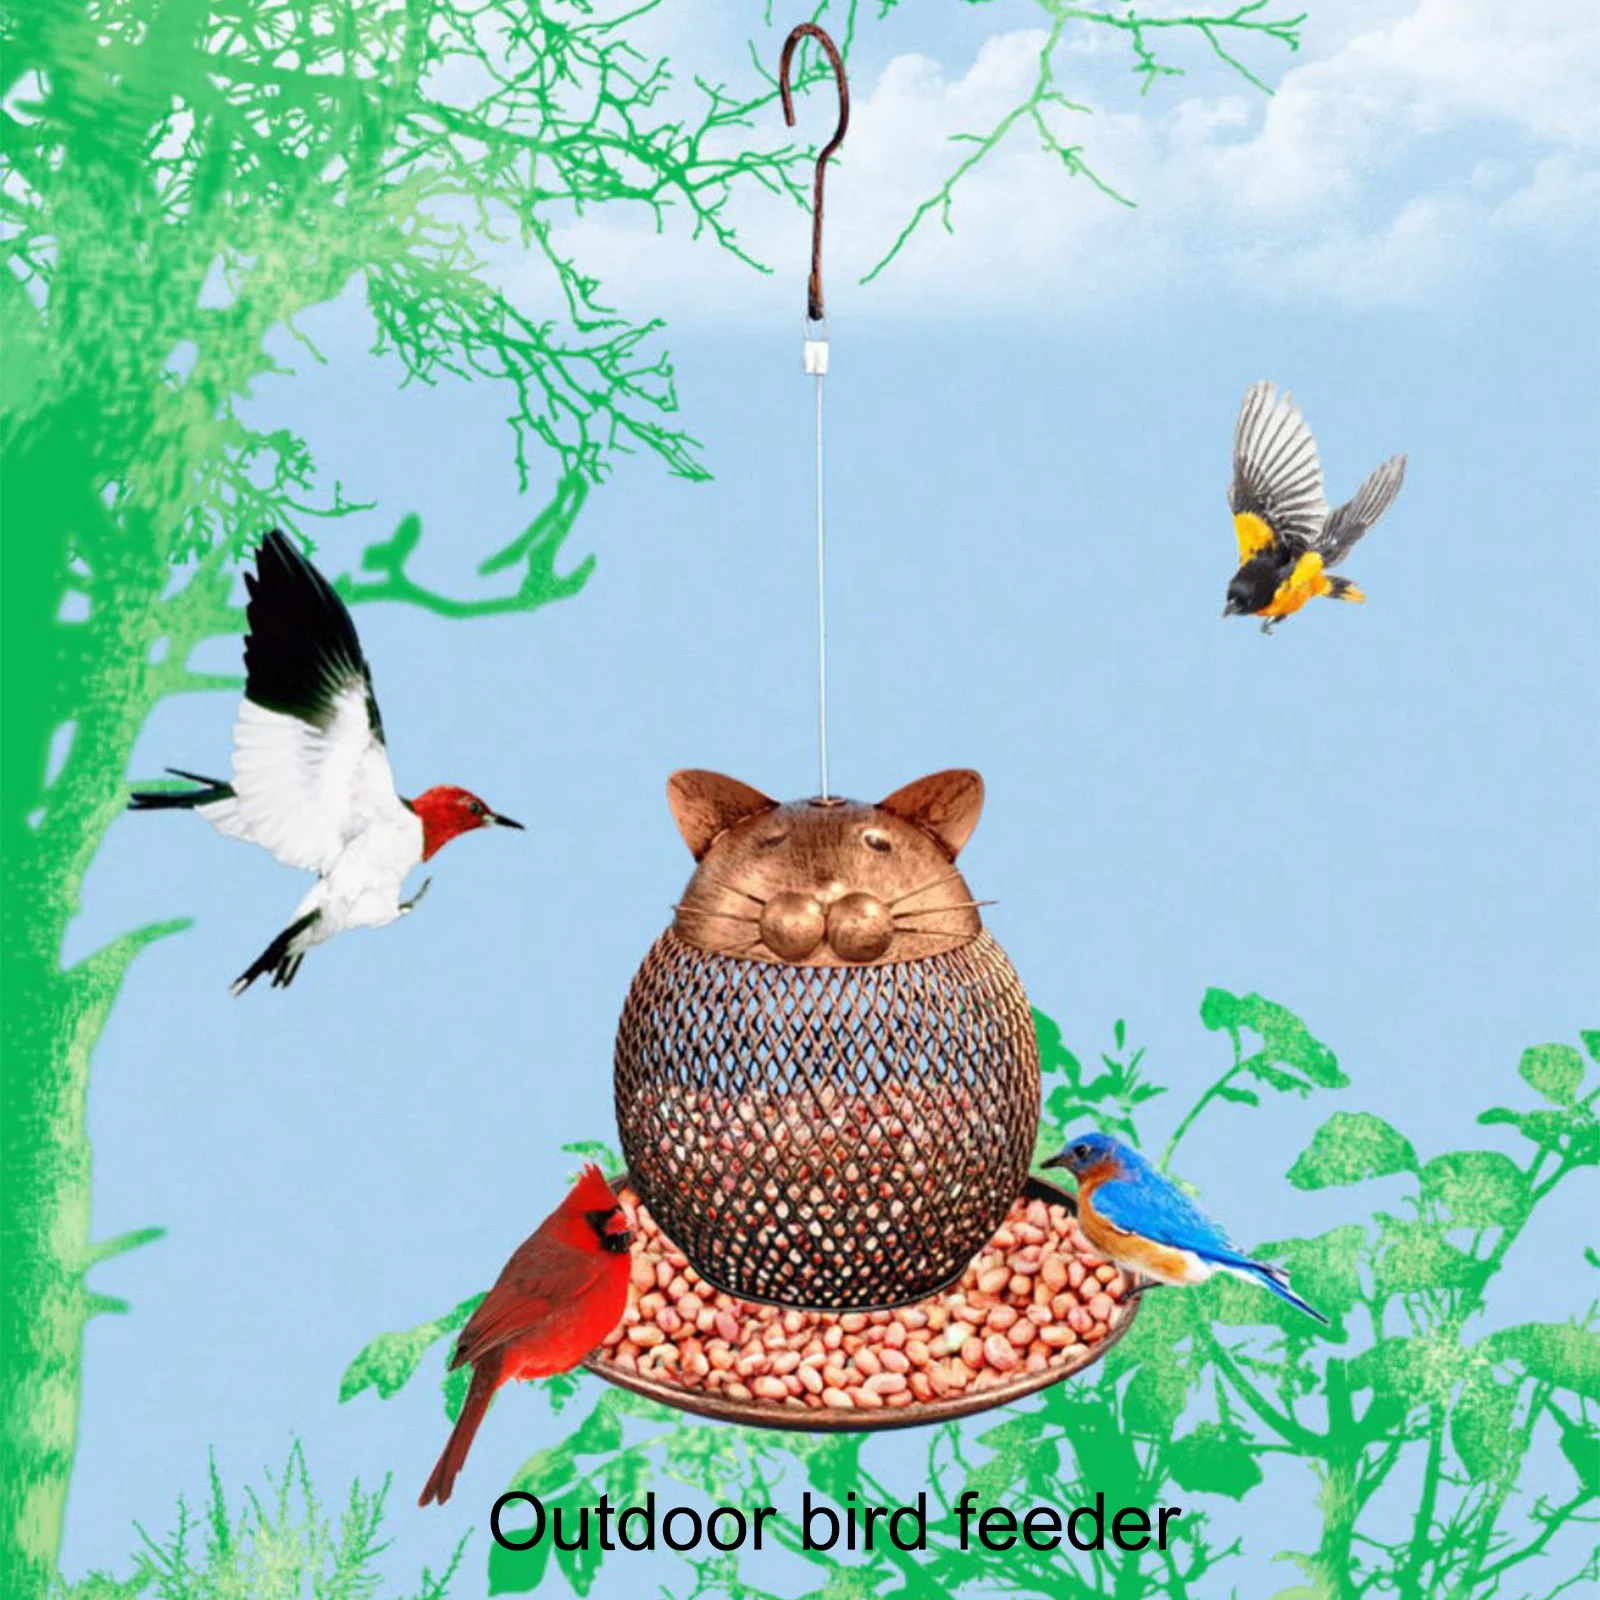 

Кормушка для птиц в форме кошки, универсальная кормушка для птиц, винтажный подвесной диспенсер для еды, наружные садовые аксессуары для пт...